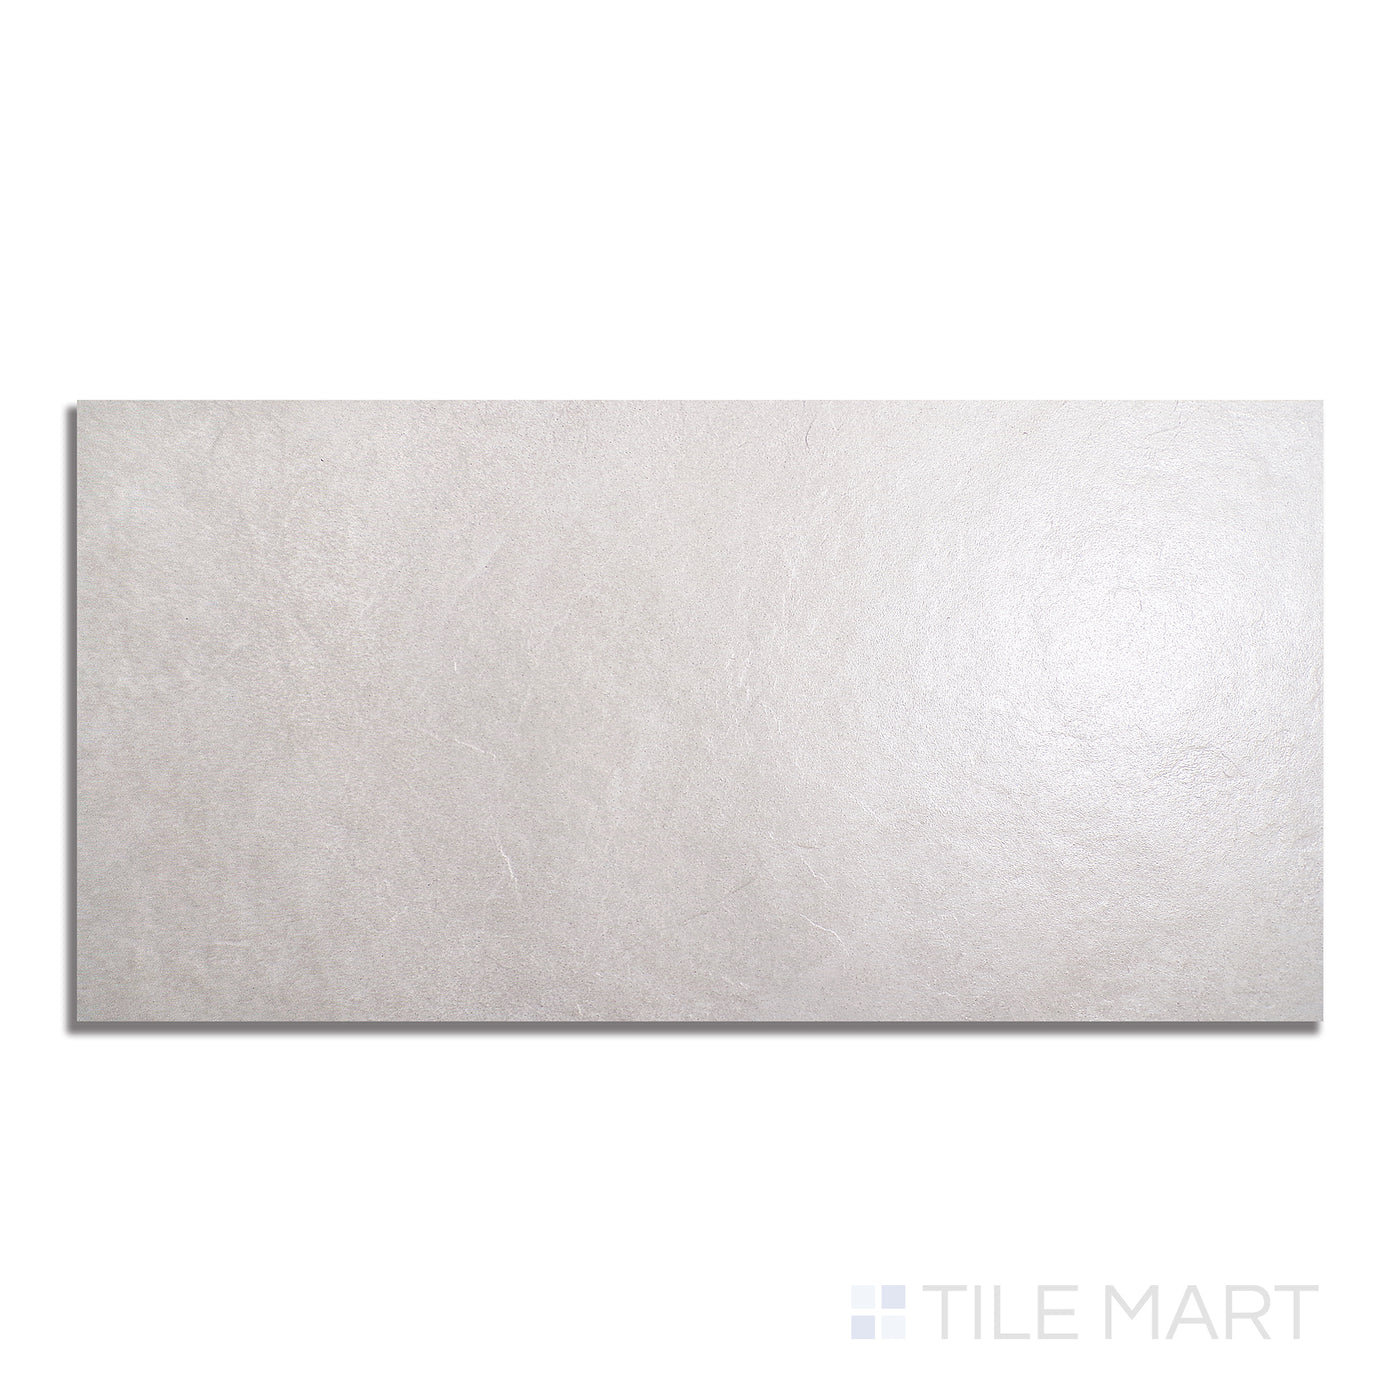 Ash Porcelain Large Format Field Tile 24X48 White Matte